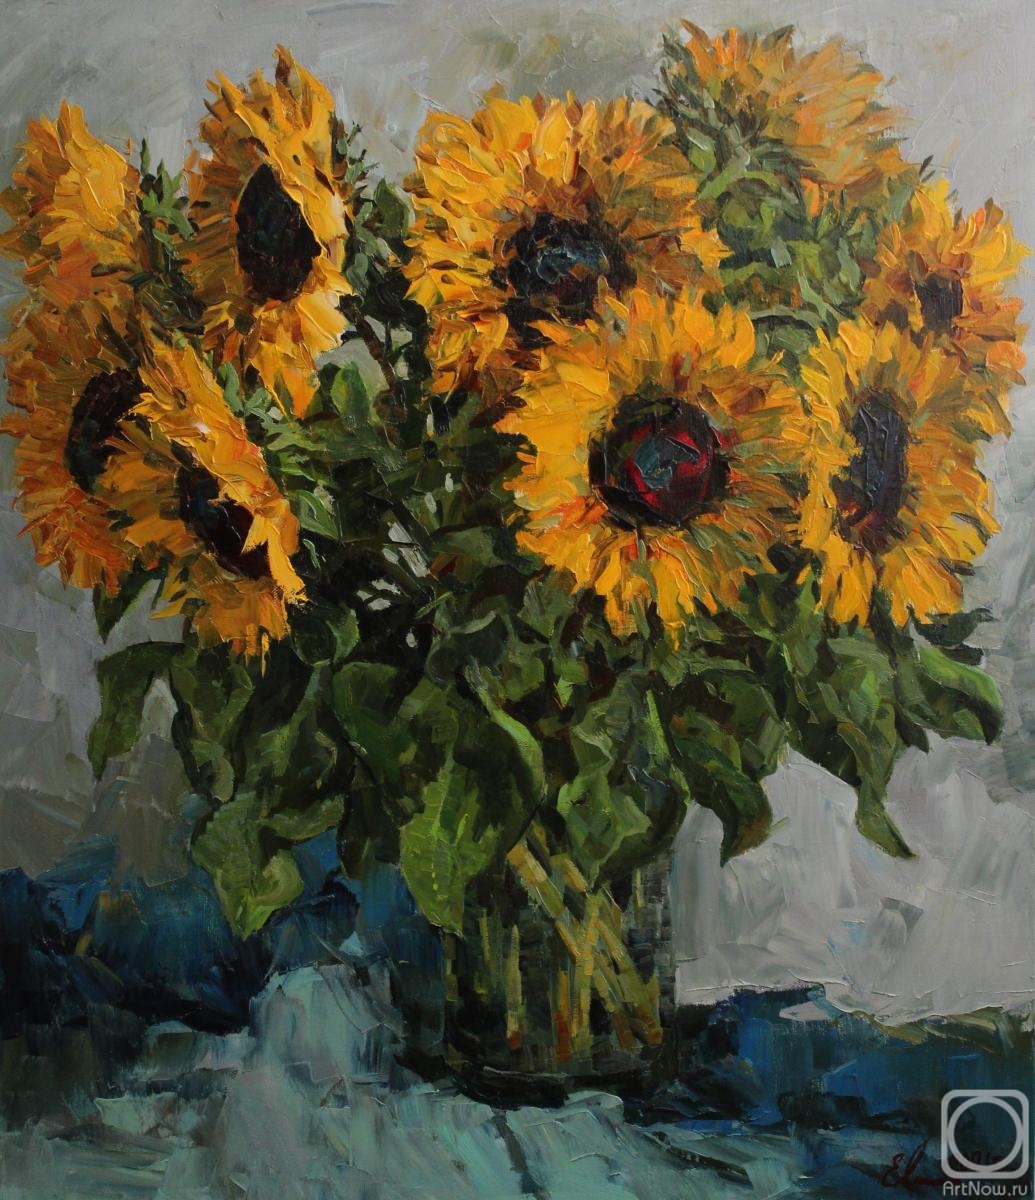 Malykh Evgeny. Sunflowers